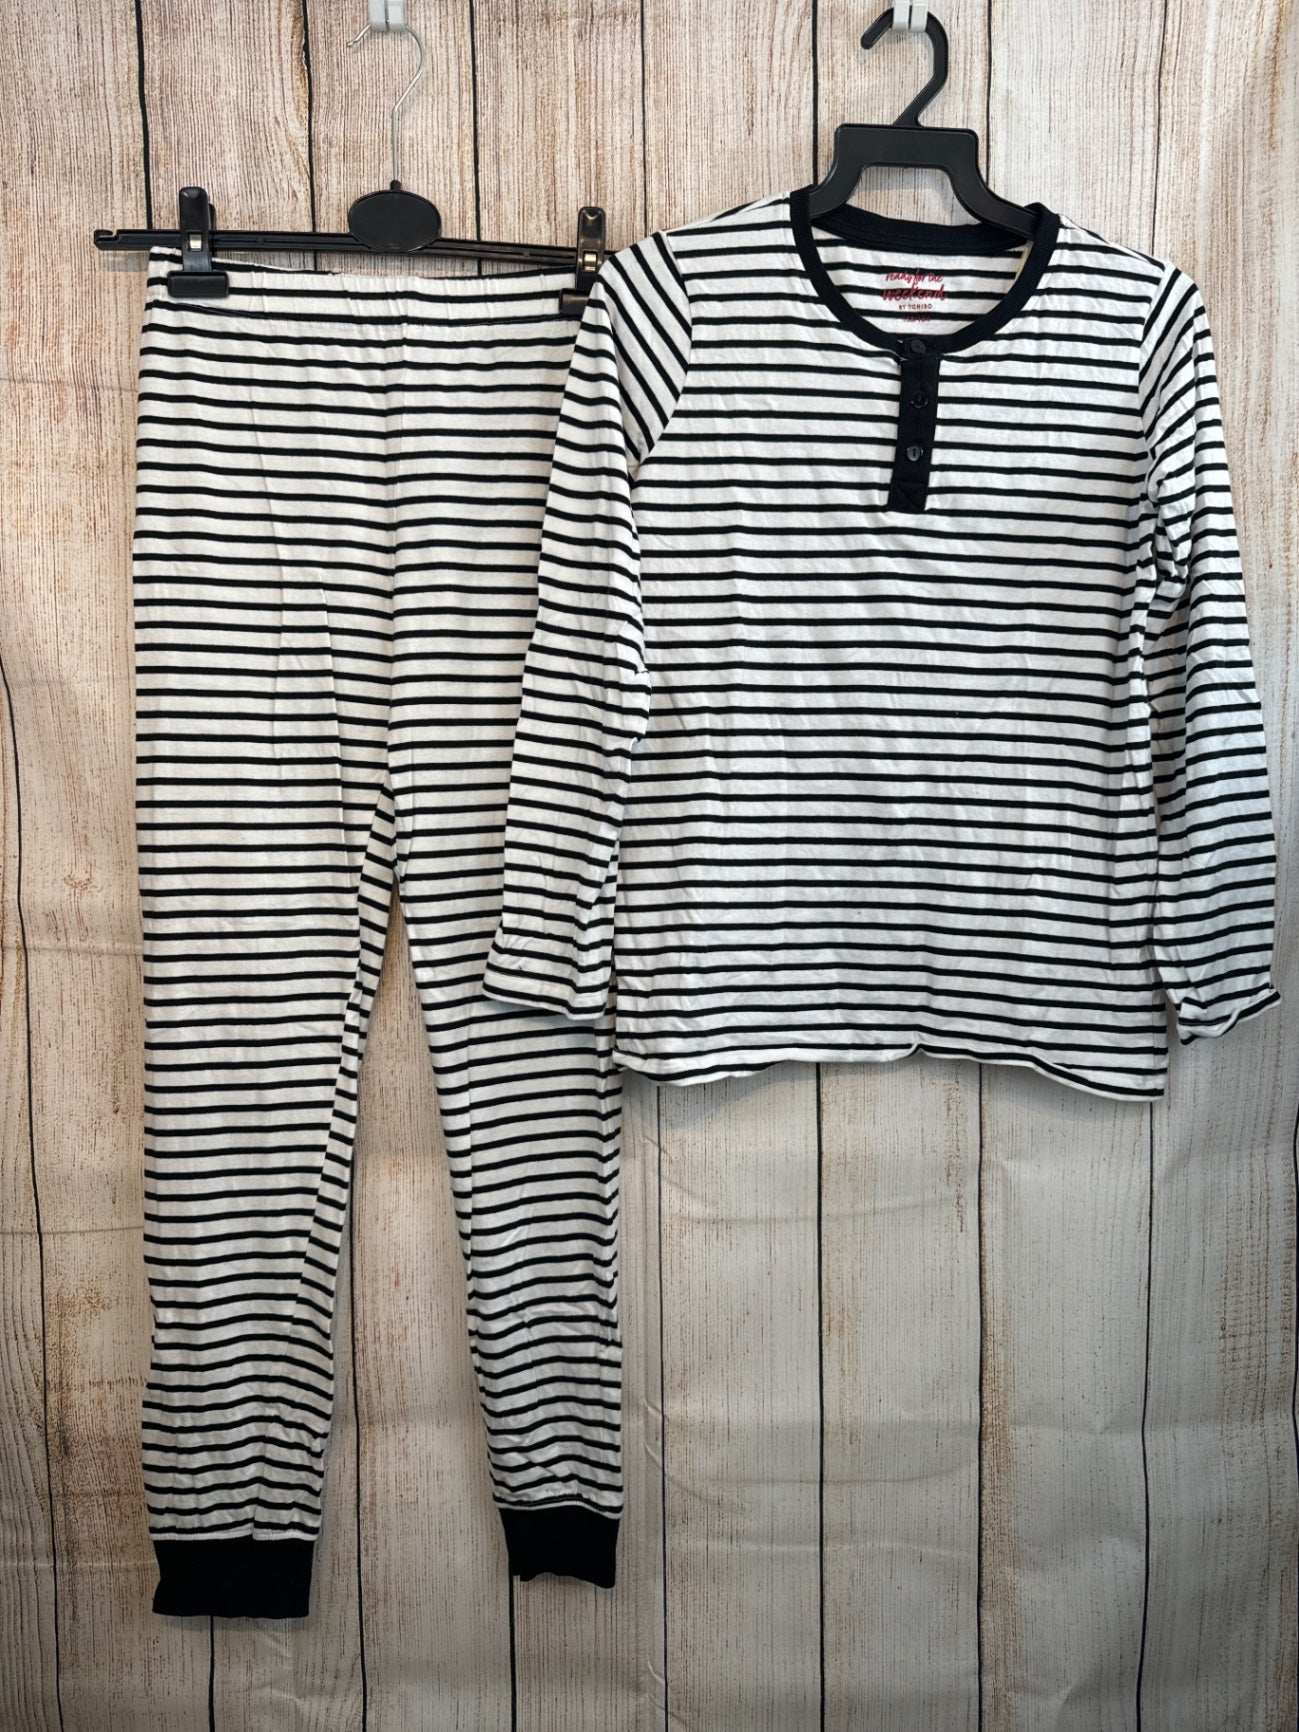 Tchibo zweiteiliger langer Schlafanzug dunkelblau/ weiß geringelt Gr. 158/164